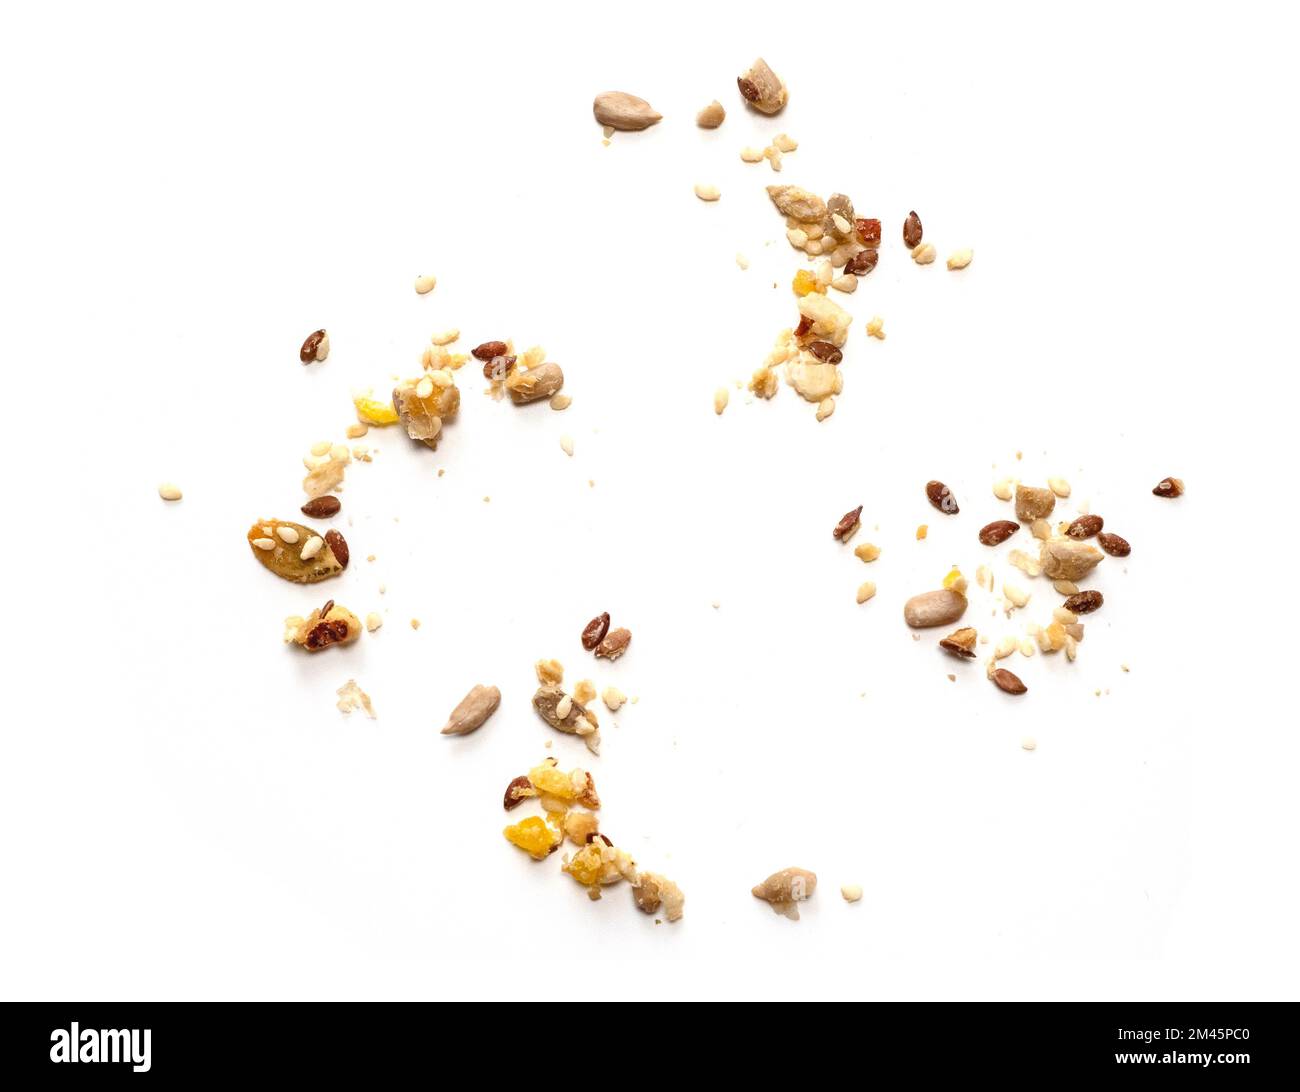 Abstrakte Getreidekörner, Samen, Müsli, Körner auf weißem Hintergrund, Draufsicht Stockfoto